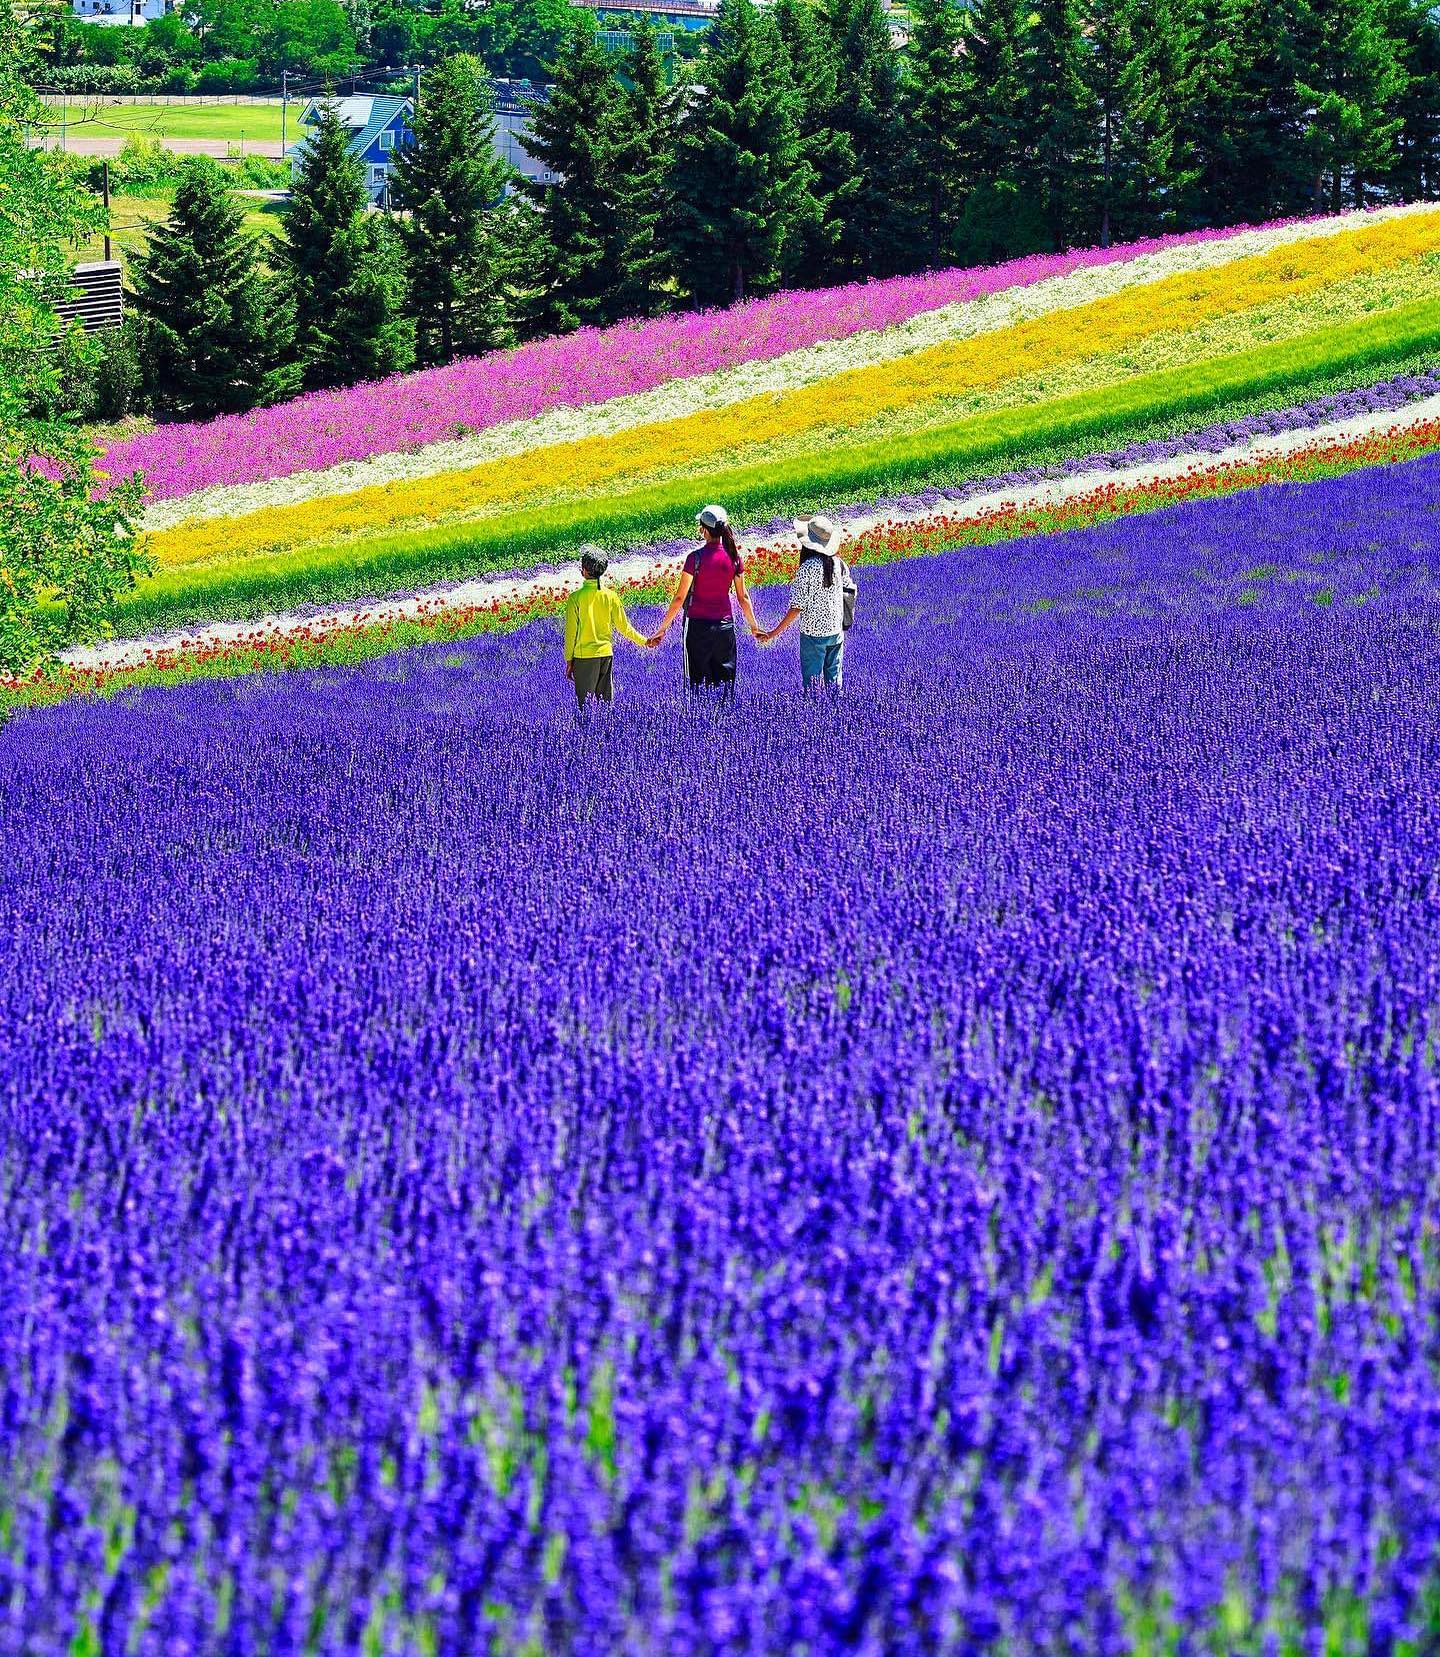 🇯🇵【北海道 Hokkaido】富田農場
🌻富良野最有超人氣的“Farm Tomita 富田農場”，通常是媒體北海道夏季賞花的封面。
❤️以五公頃薰衣草花田為首的各種彩色花卉農園，欣賞像是以大地為畫布，起伏丘陵上色彩繽紛的花田
🌞廣大的富田農場有不同花田區域，薰衣草最佳花期往年七月中到八月初。最推薦自駕，此外也有火車可抵達。

#japan #hokkaido #furano #tomotafarm #北海道 #富良野 #富田農場 #把世界當教室🌍 #日本夏季絕景 #牽手照系列👫 #travelwithmikeanna